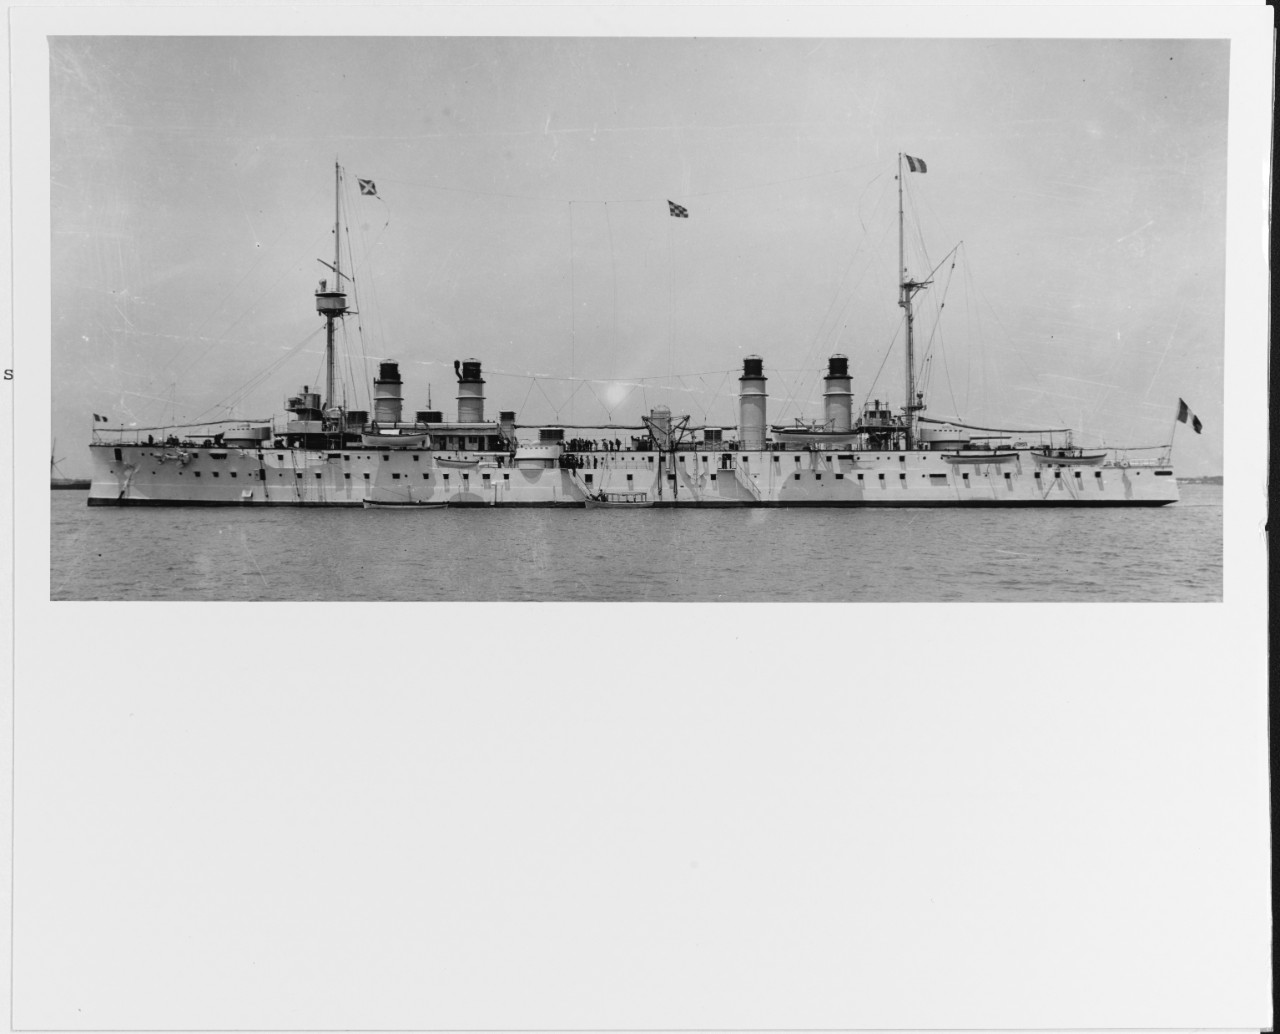 KLEBER (French armored cruiser, 1902)